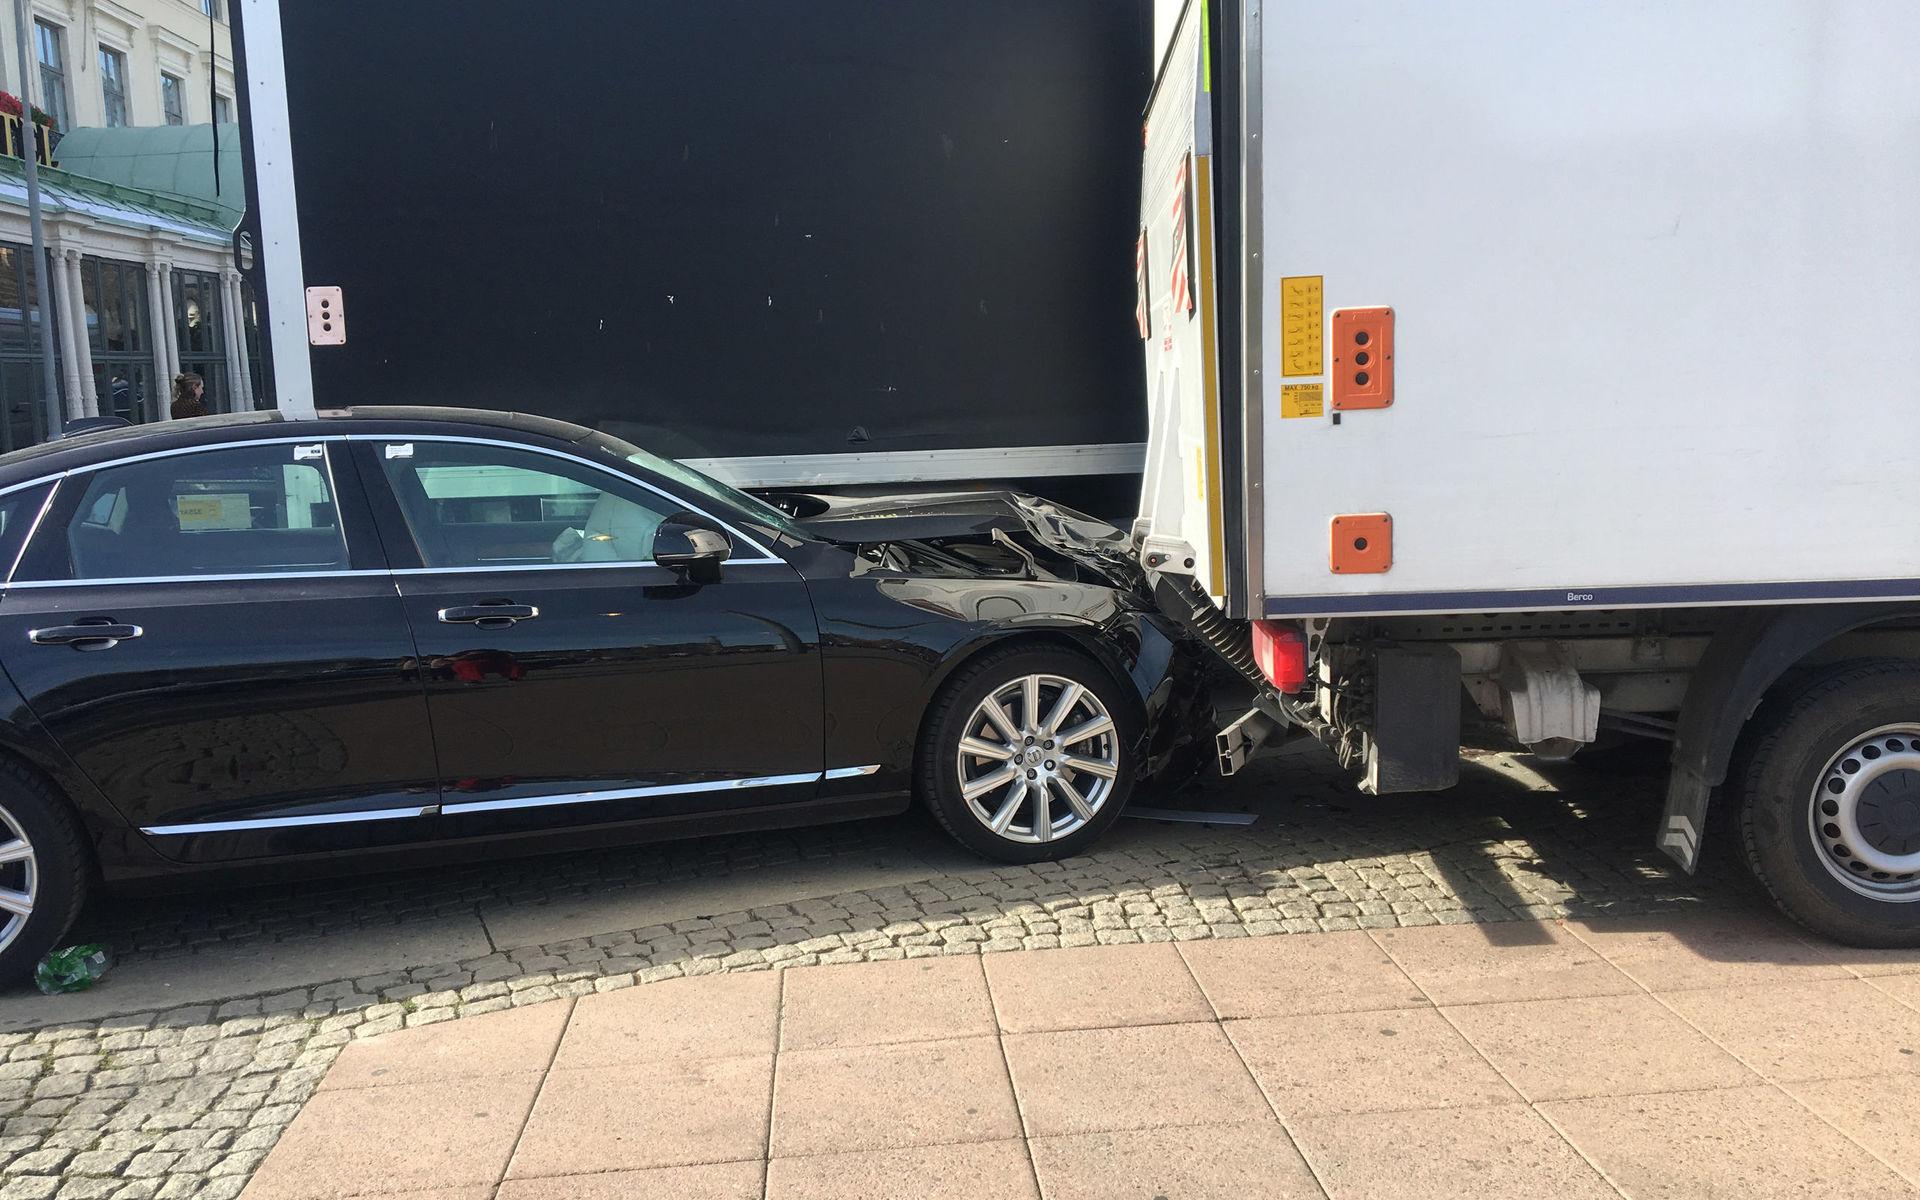 Olyckan inträffade utanför Hotell Eggers i centrala Göteborg.